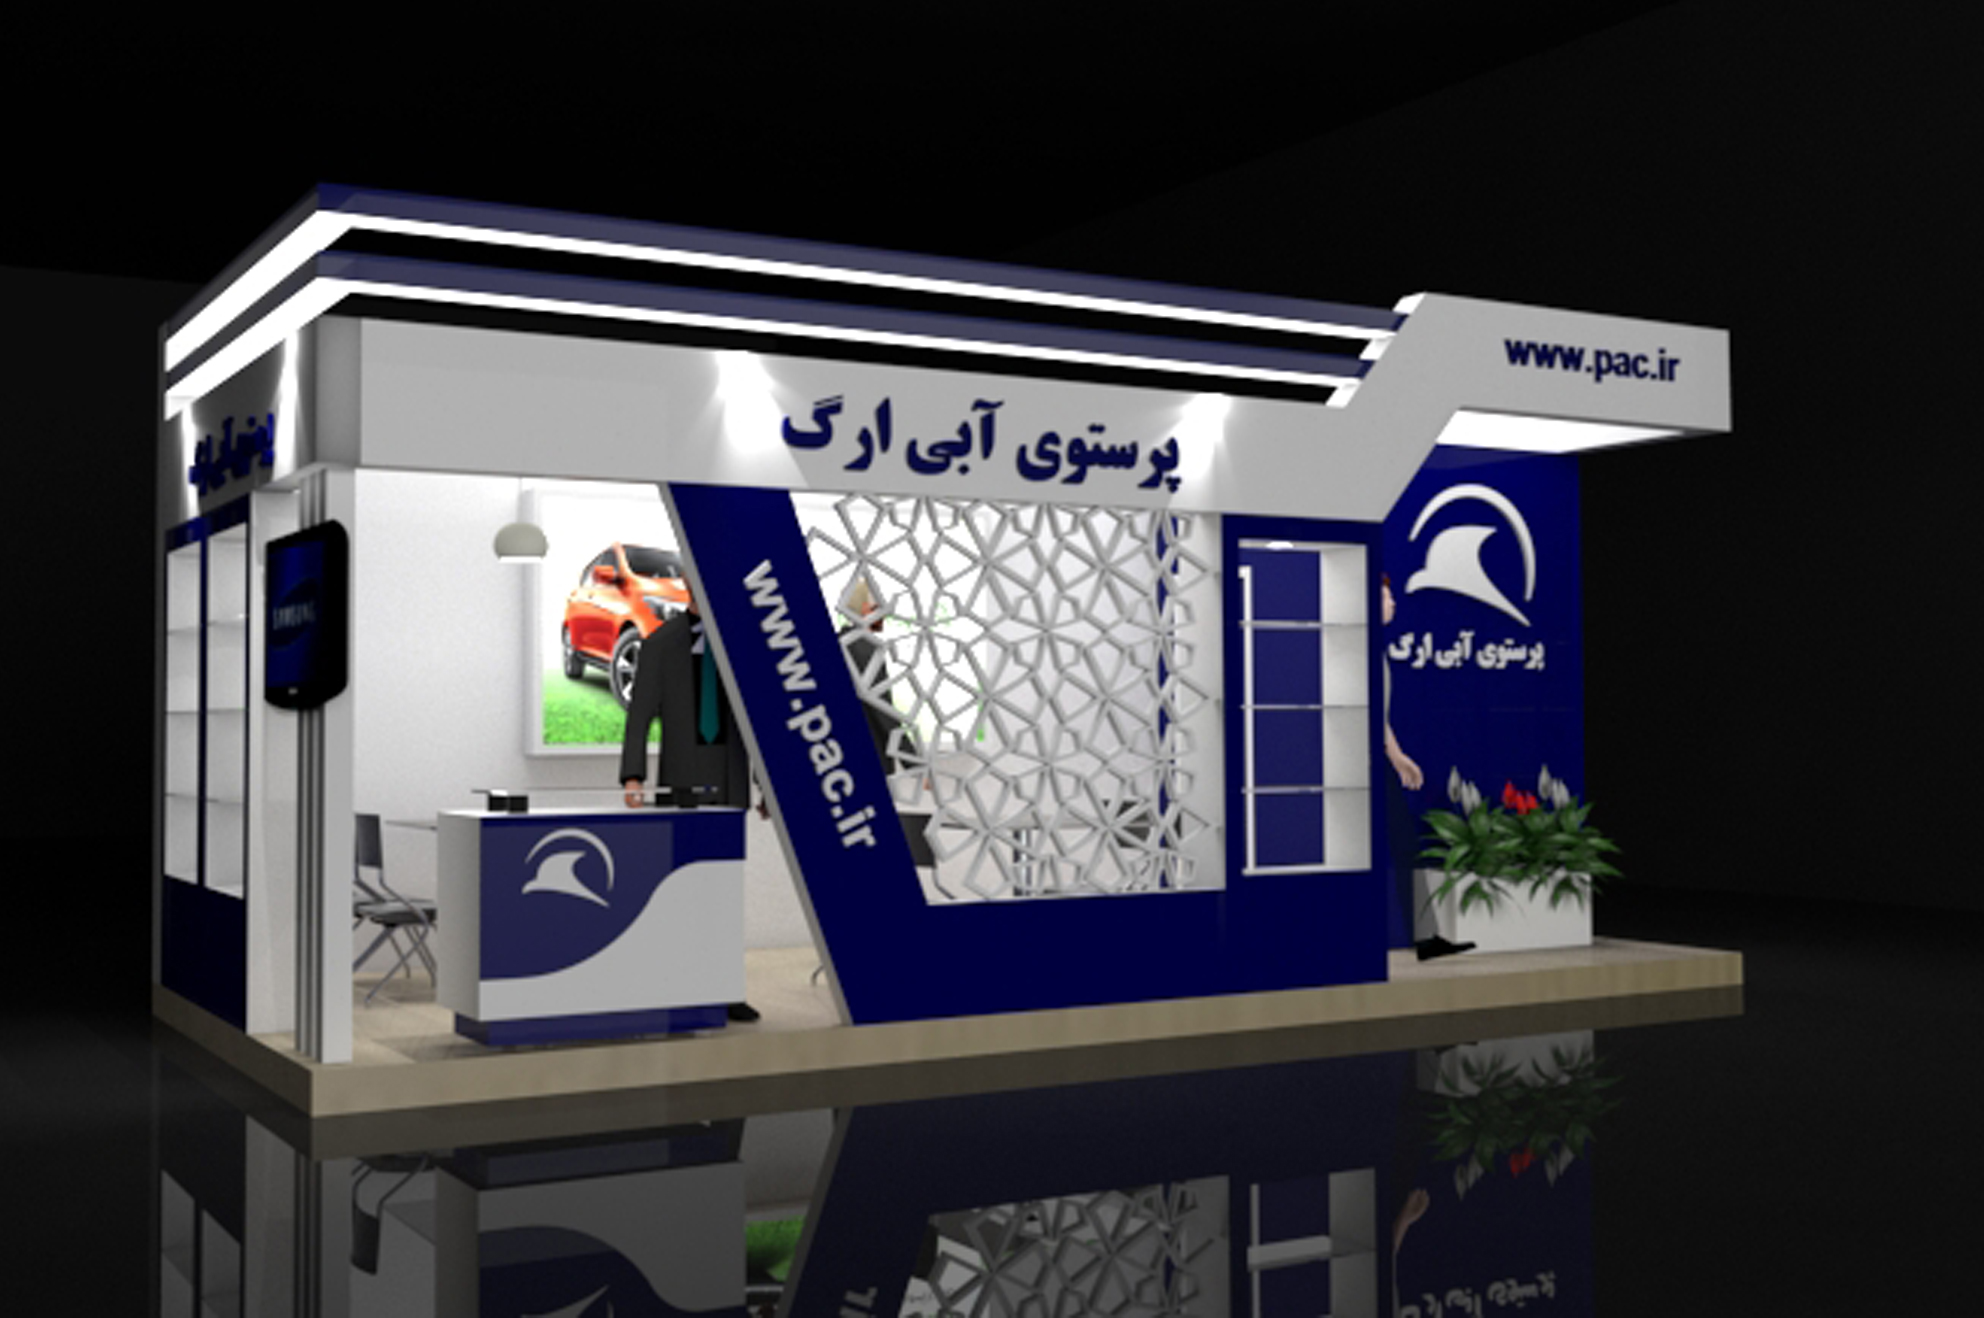 غرفه سازی نمایشگاهی - نمایشگاه بین المللی - غرفه سازی در تهران- نمایشگاه بین المللی مشهد- طراحی پلان غرفه نمایشگاهی - شرکت غرفه سازی-